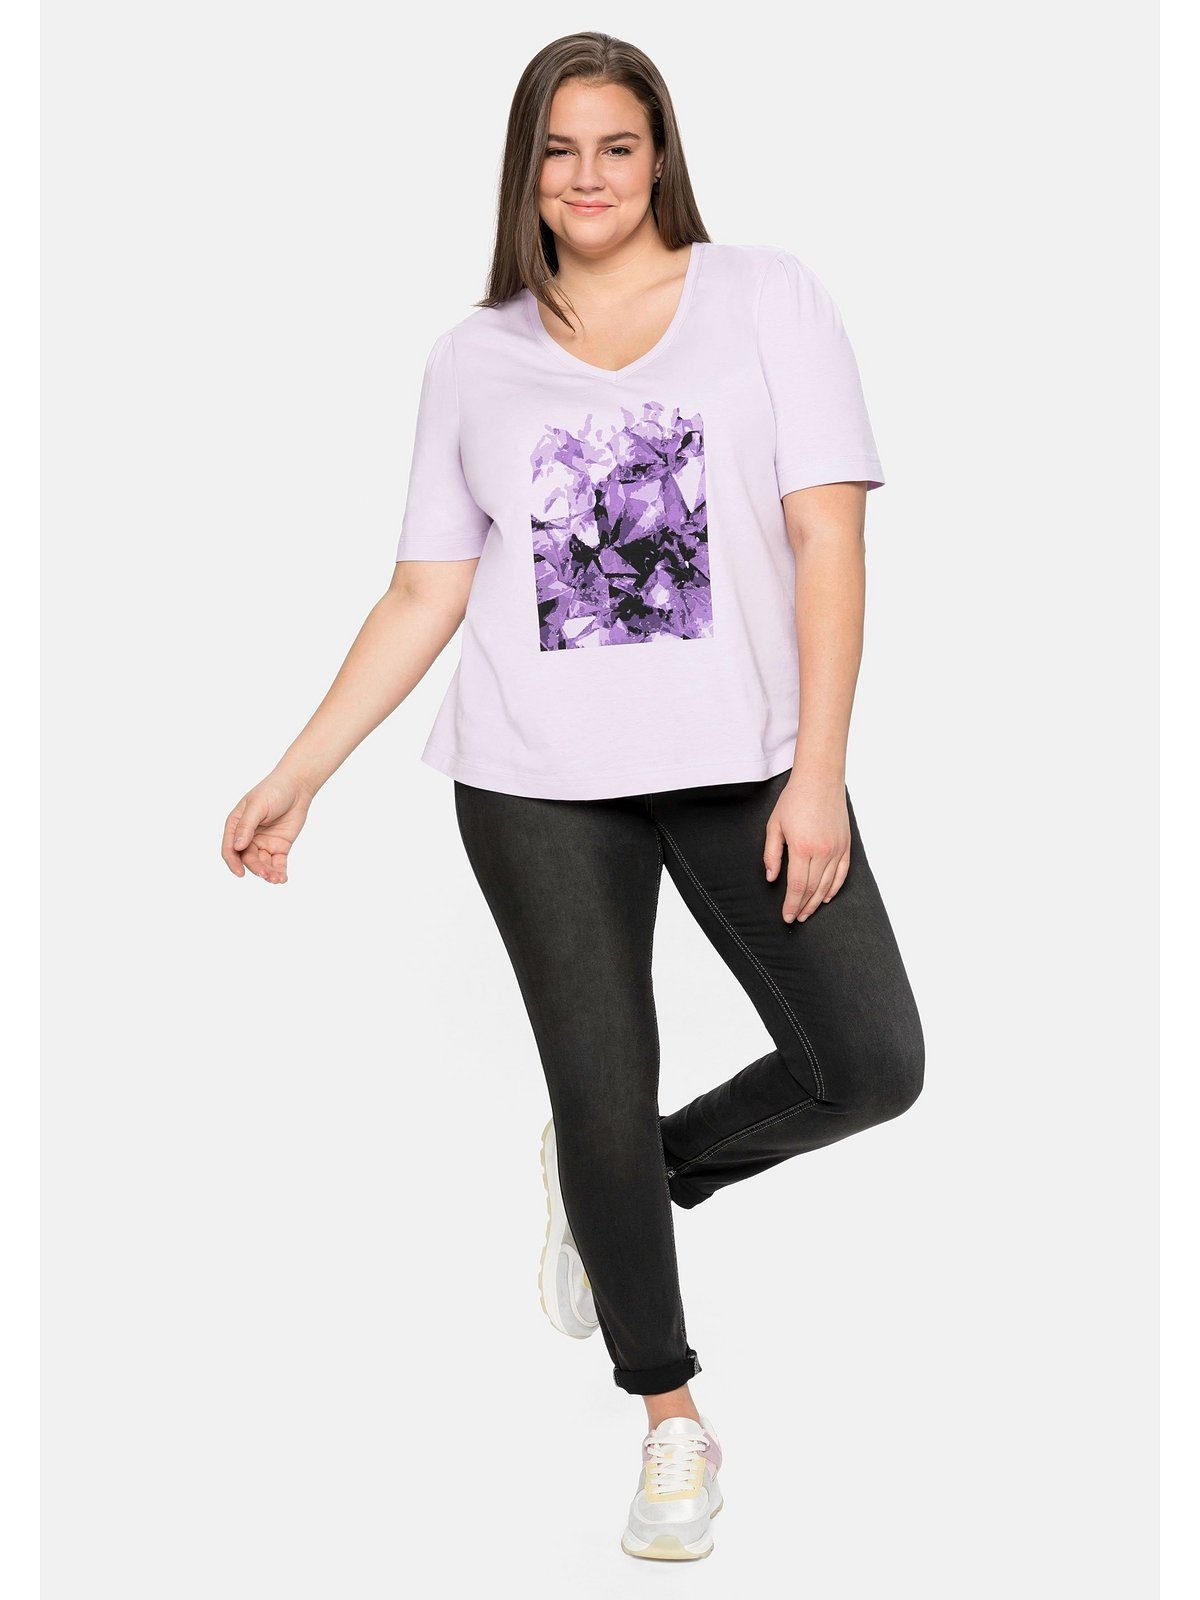 Sheego T-Shirt Große Größen aus Frontdruck lavendel Baumwolle mit